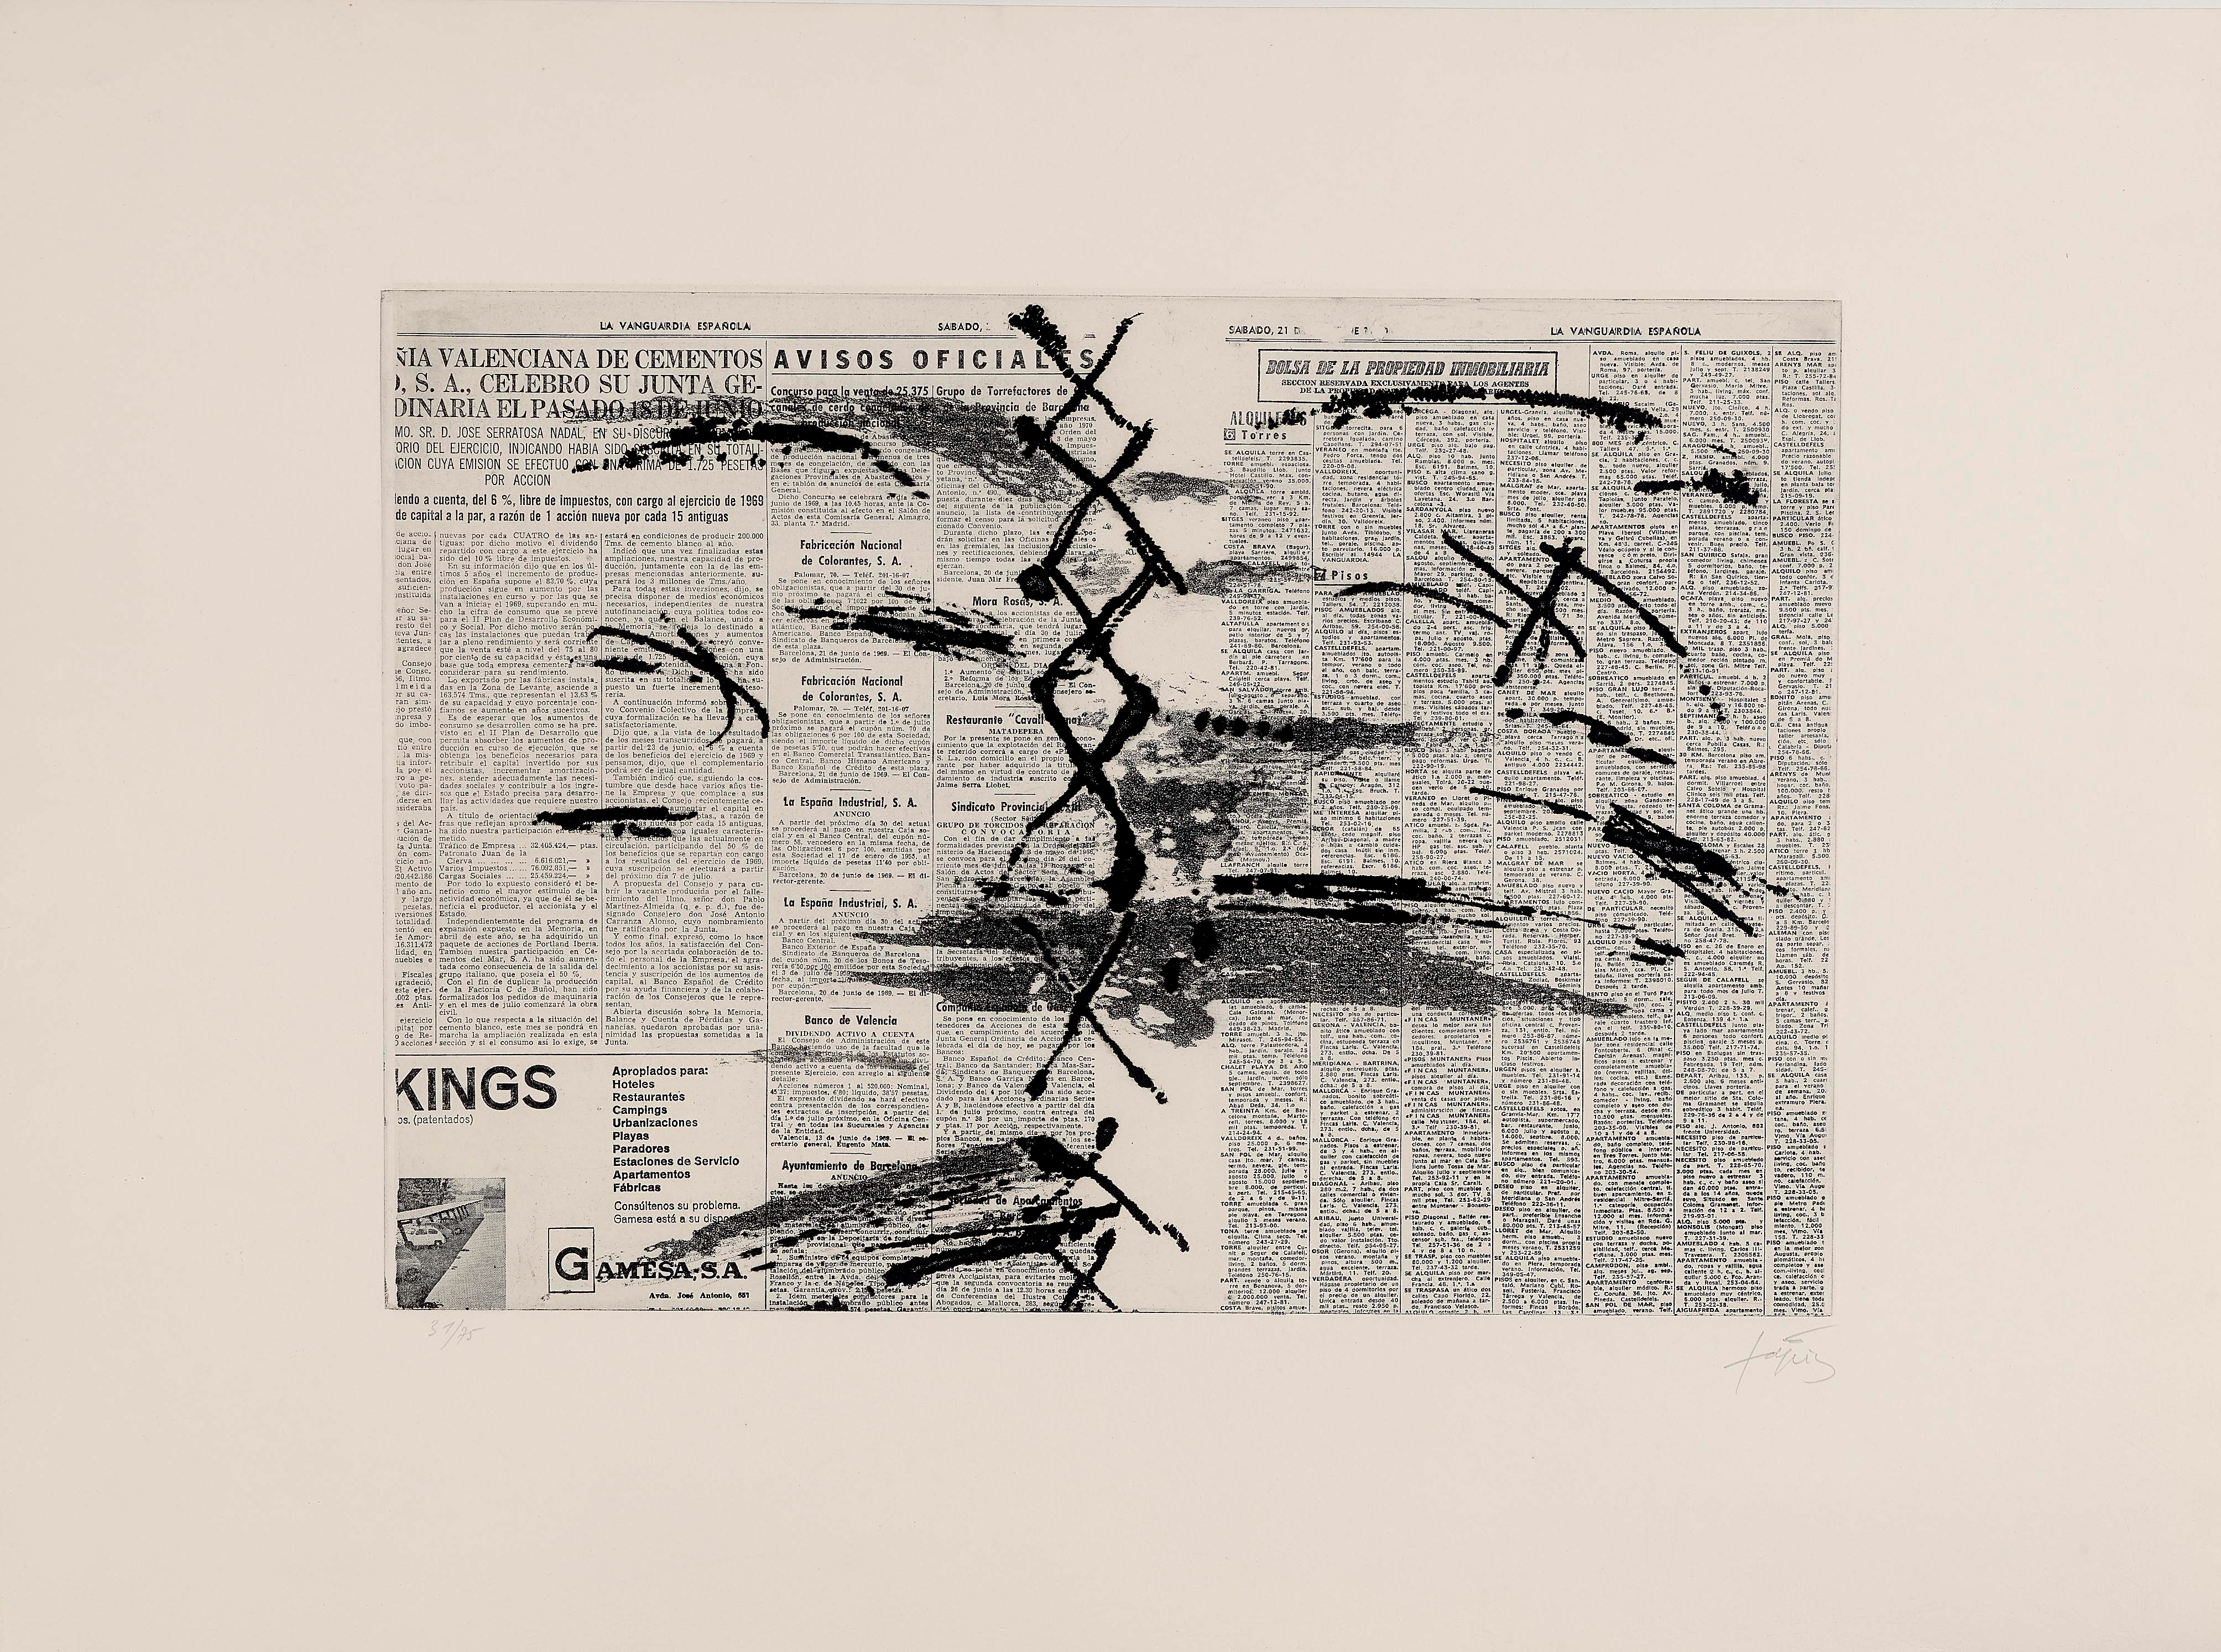 Papier journal by Antoni Tàpies, 1969